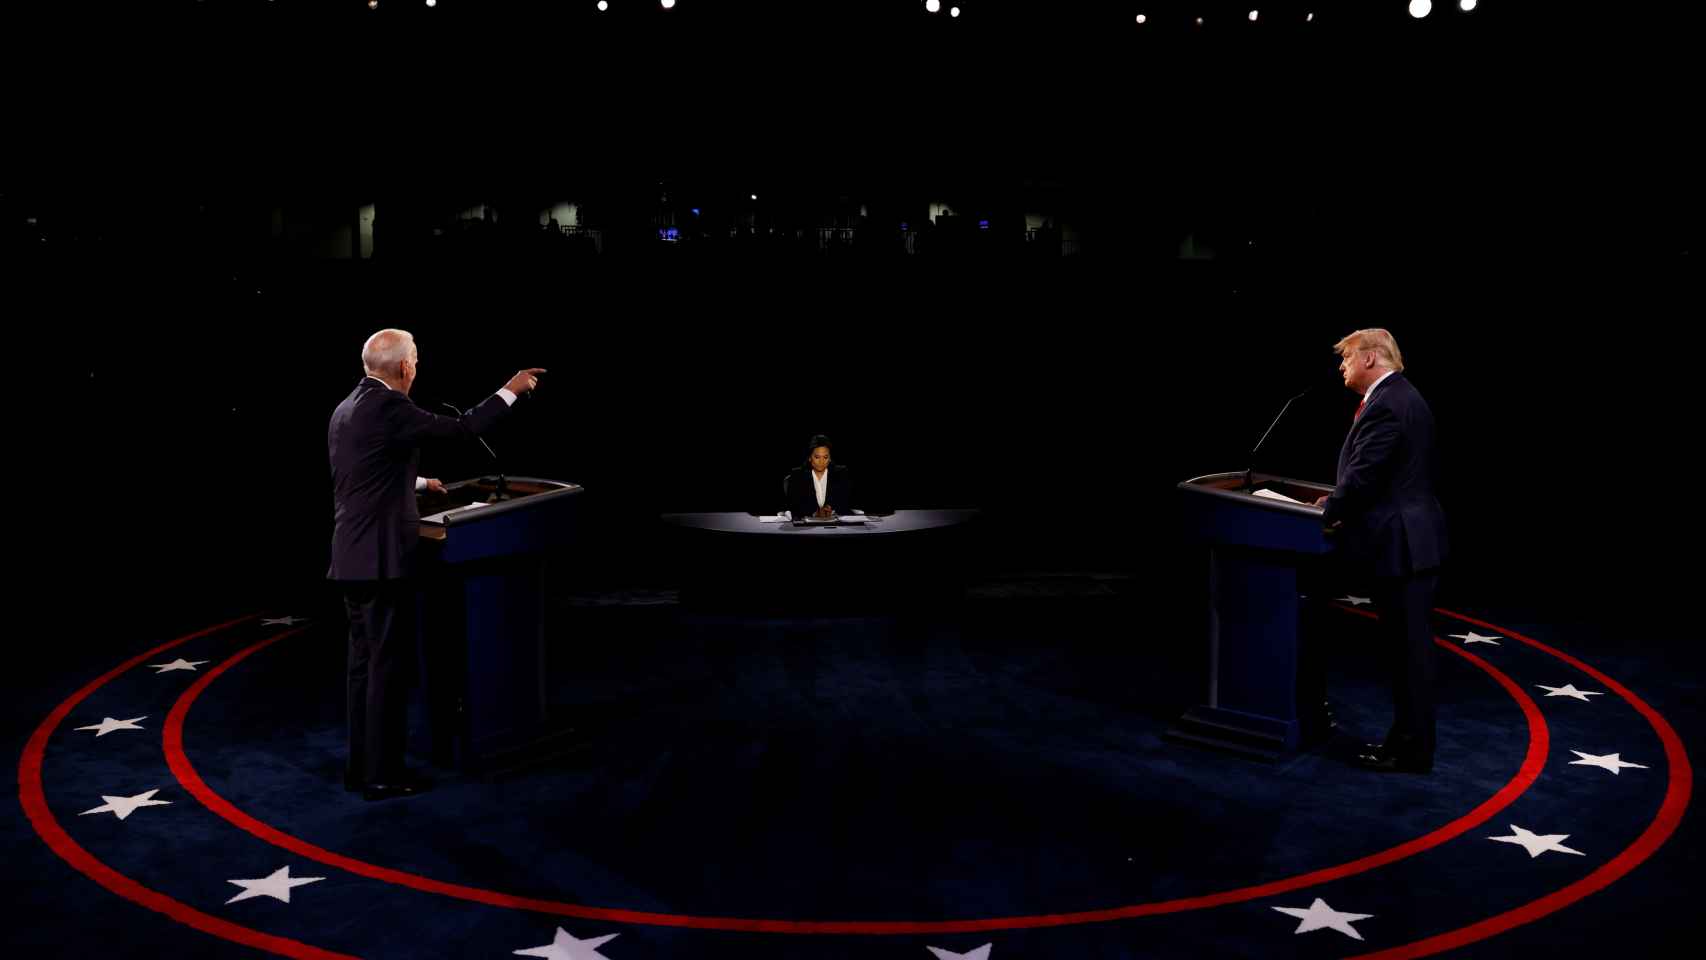 Último debate entre Donald Trump y Joe Biden antes de las elecciones, celebrado en Nashville.